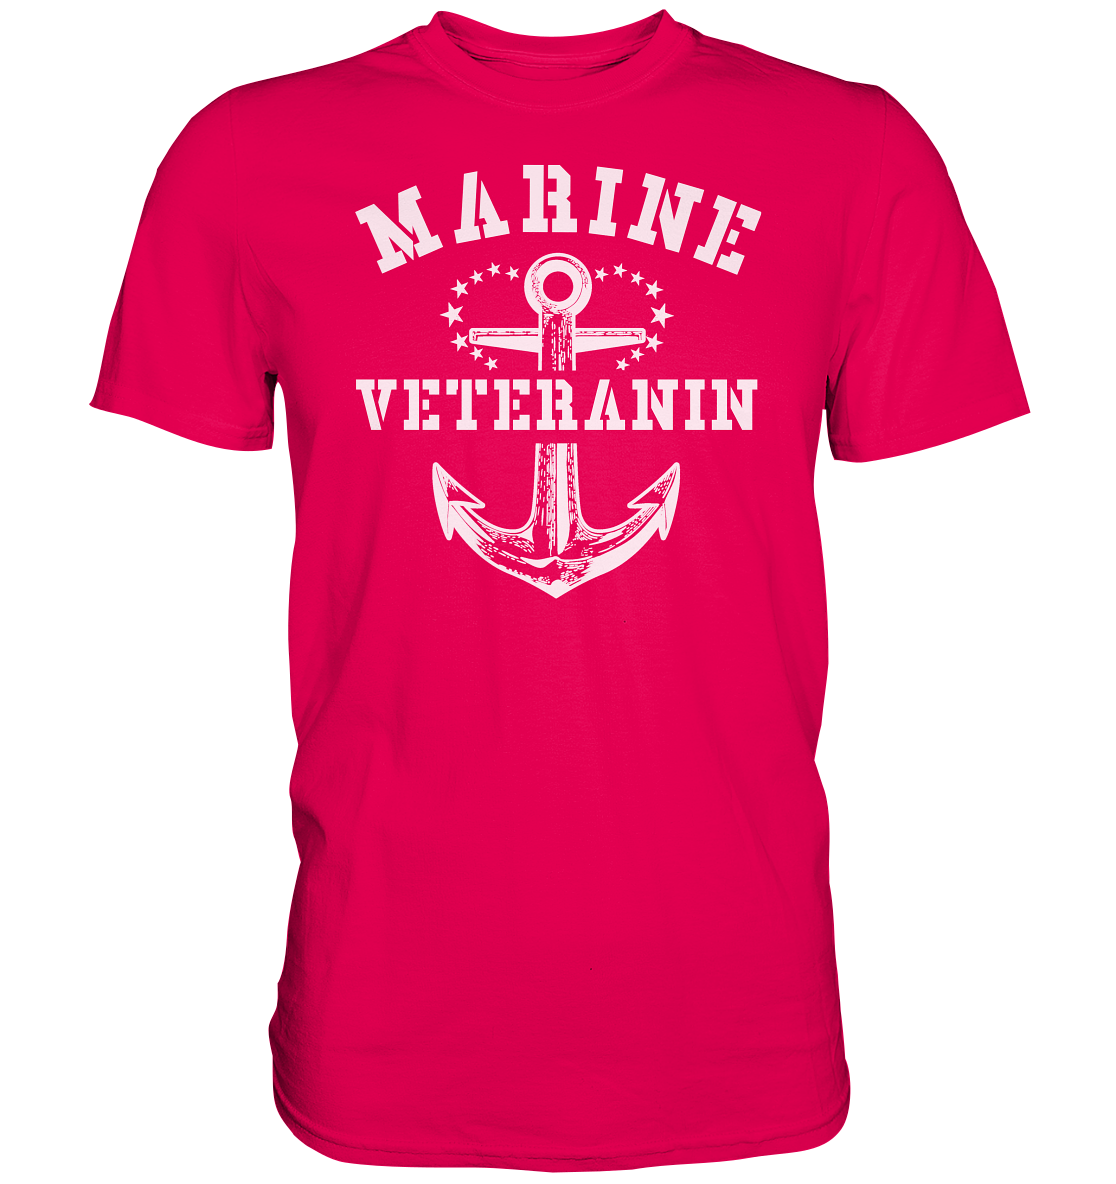 Marine Veteranin - Premium Shirt